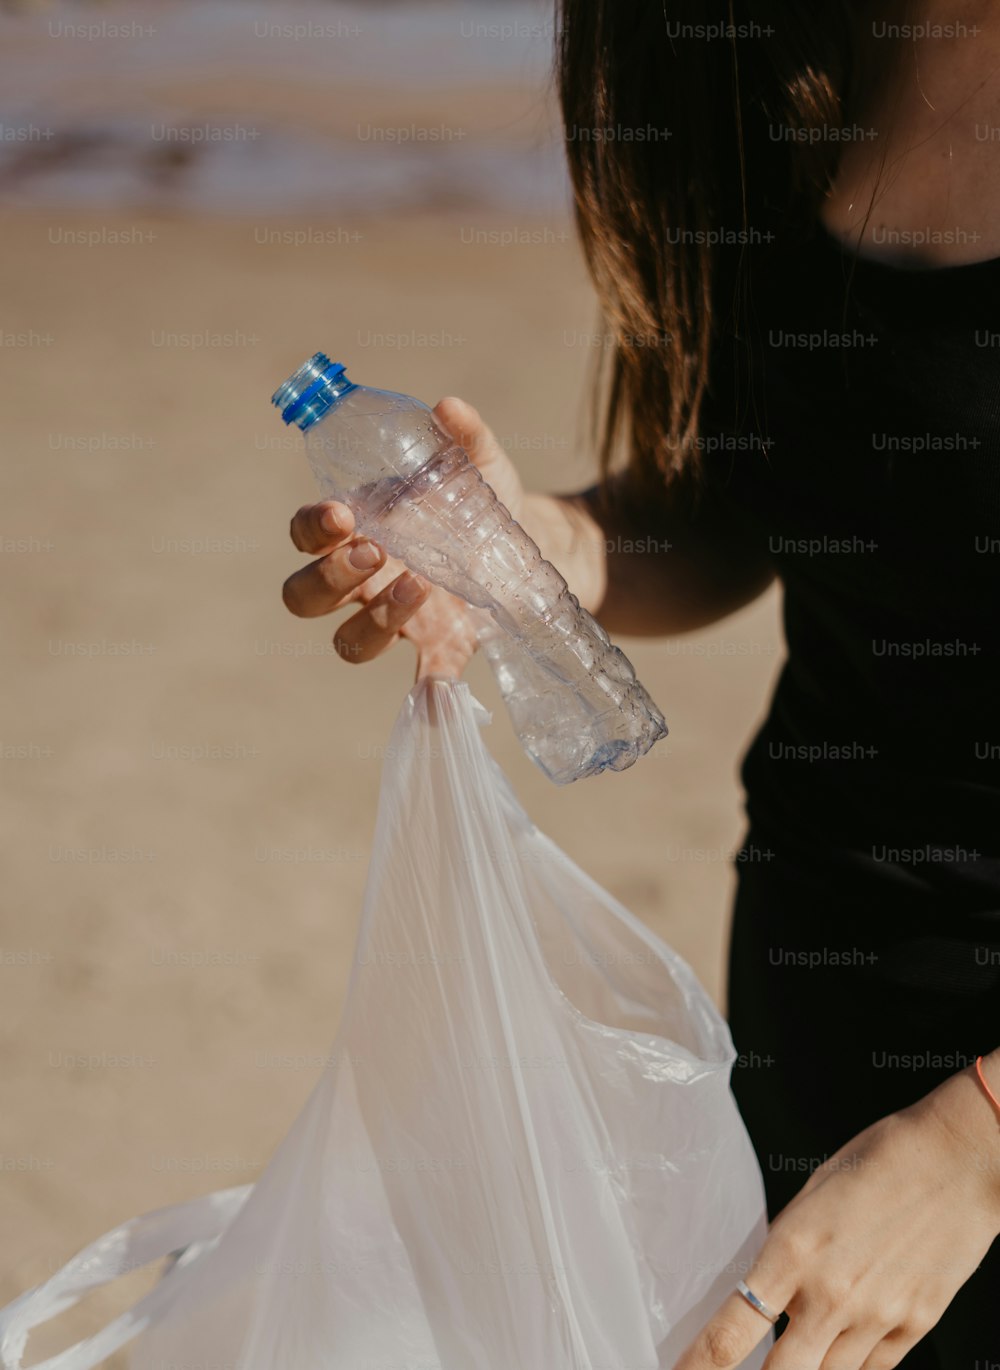 una mujer sosteniendo una bolsa de plástico y una botella de agua